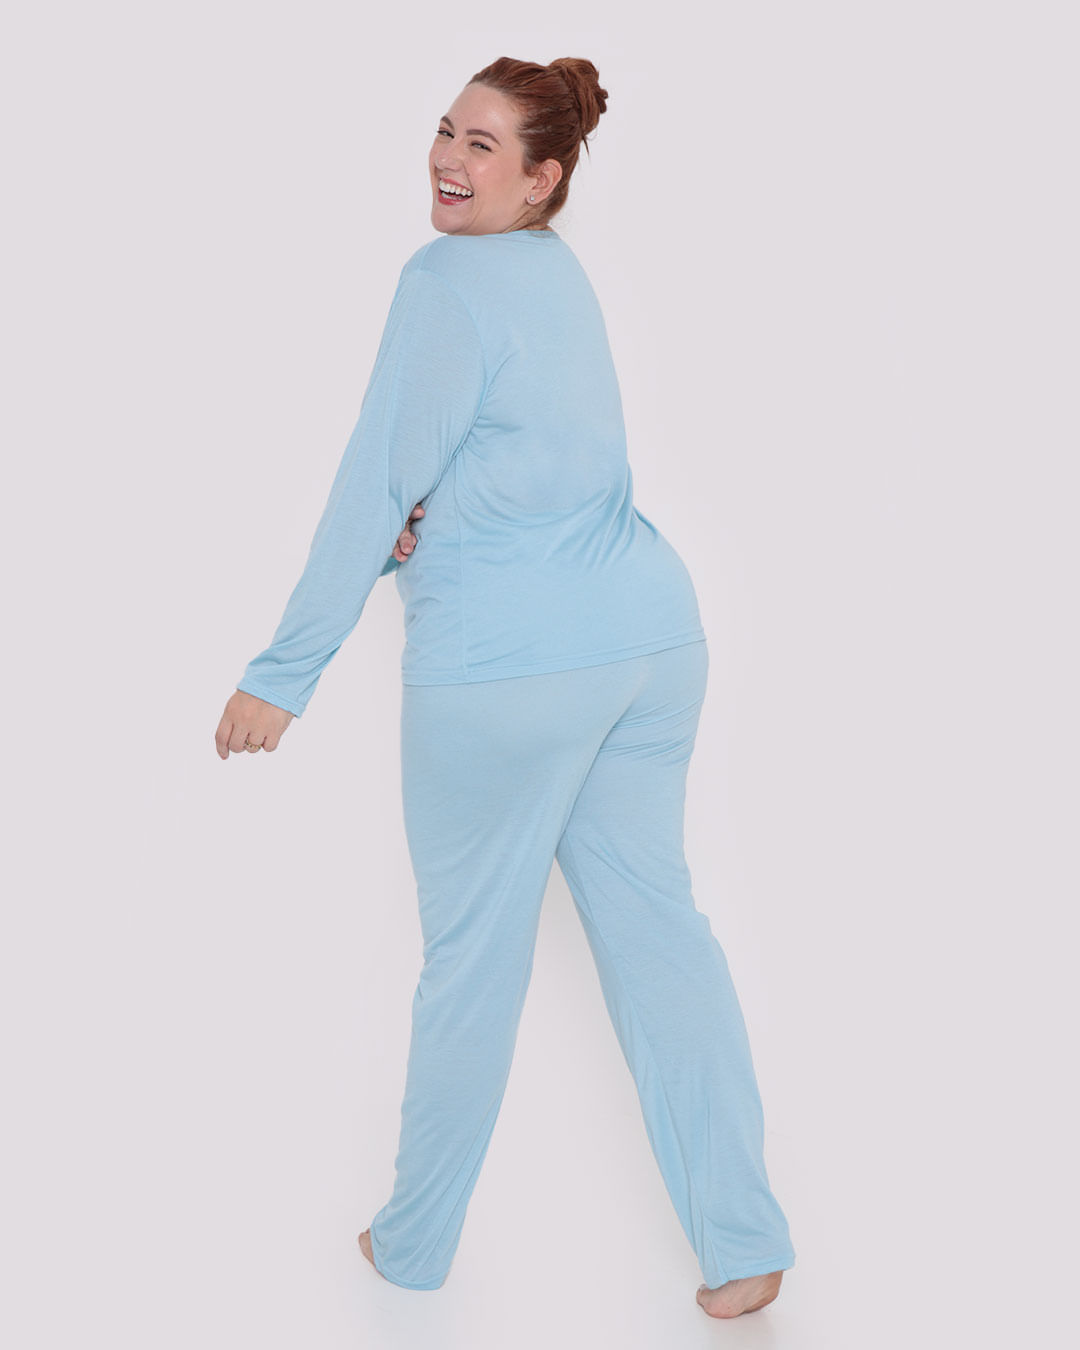 Pijama-Feminino-Plus-Size-Longo-Pug-Azul-Claro